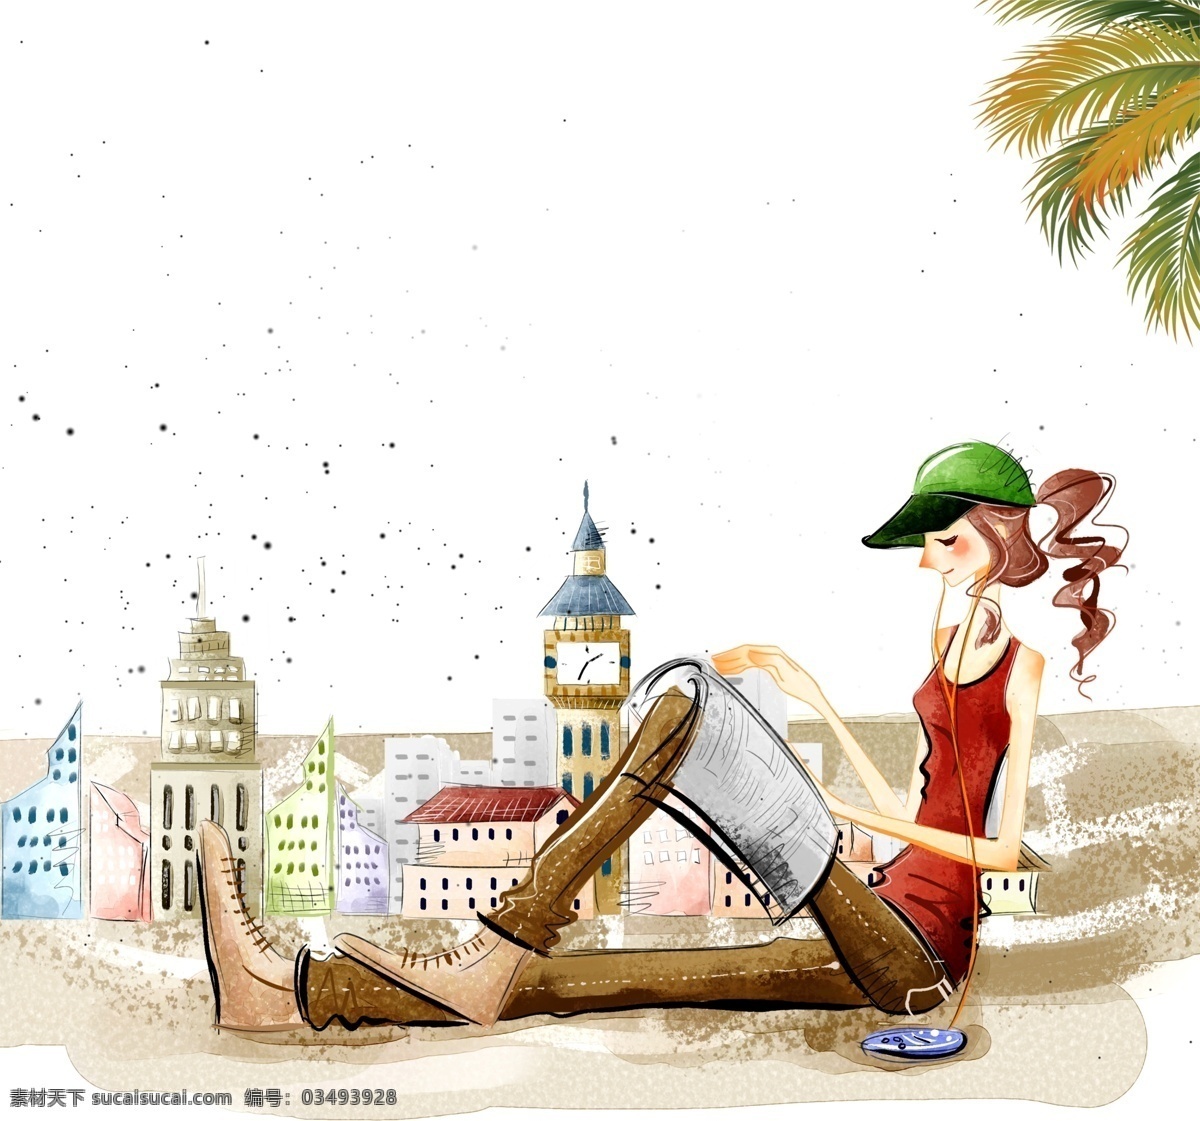 手绘 旅行 少女 插画 元素 行李箱 沙滩 出行